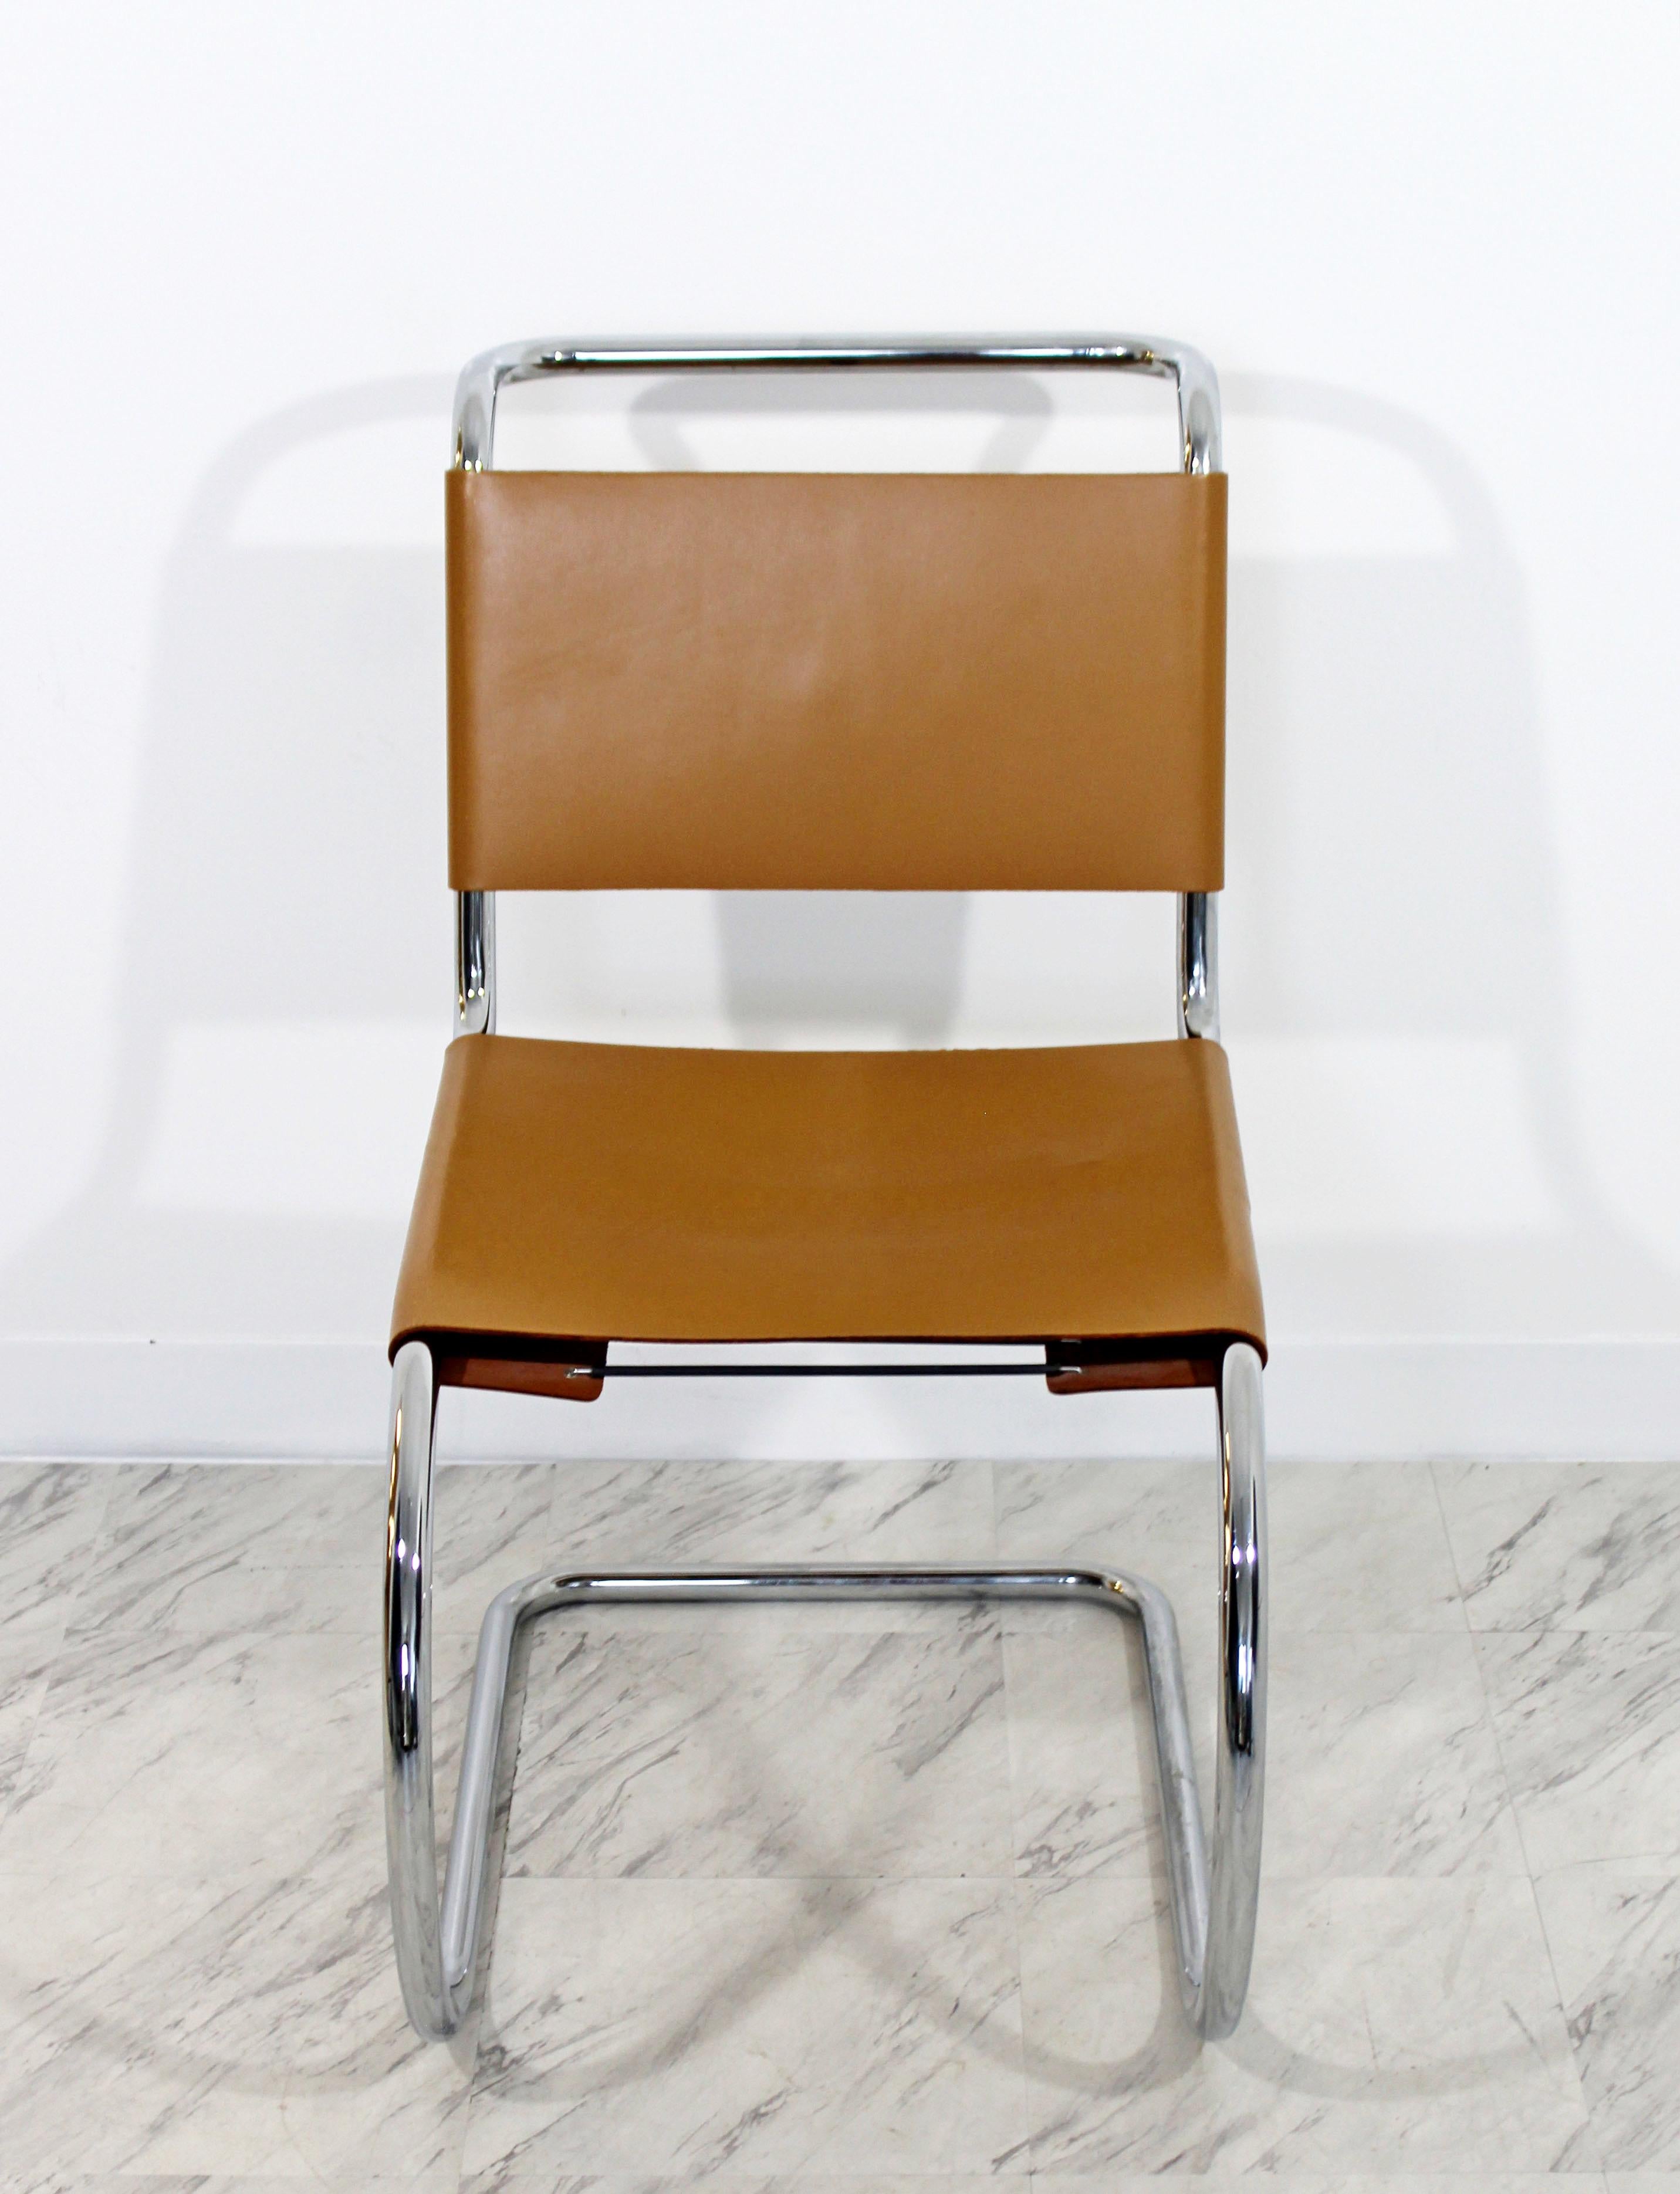 Italian Mid-Century Modern Mies Van Der Rohe Knoll Mr Leather Chrome Chair 1970s, Italy